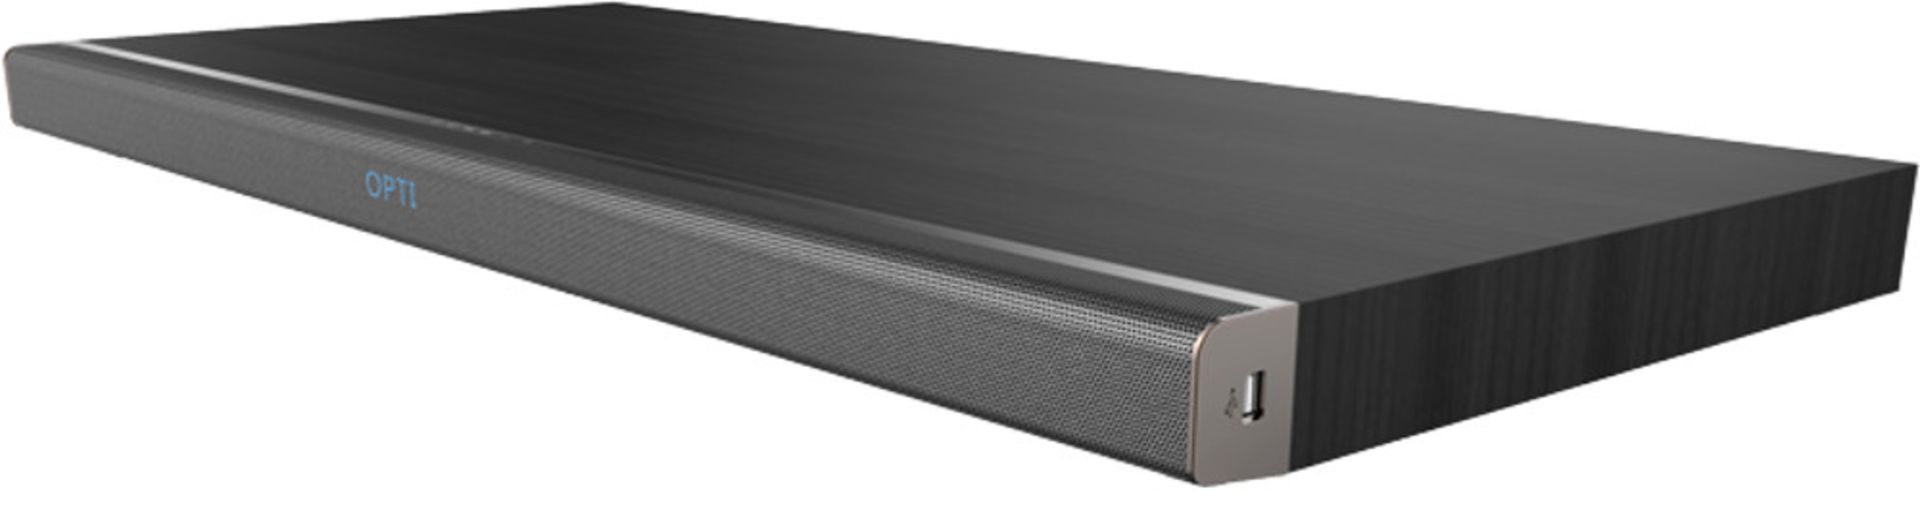 V Brand New Linsar Soundbase10 - Slim Stylish Design - 80w Speakers - 2x 20w Speakers - 40w